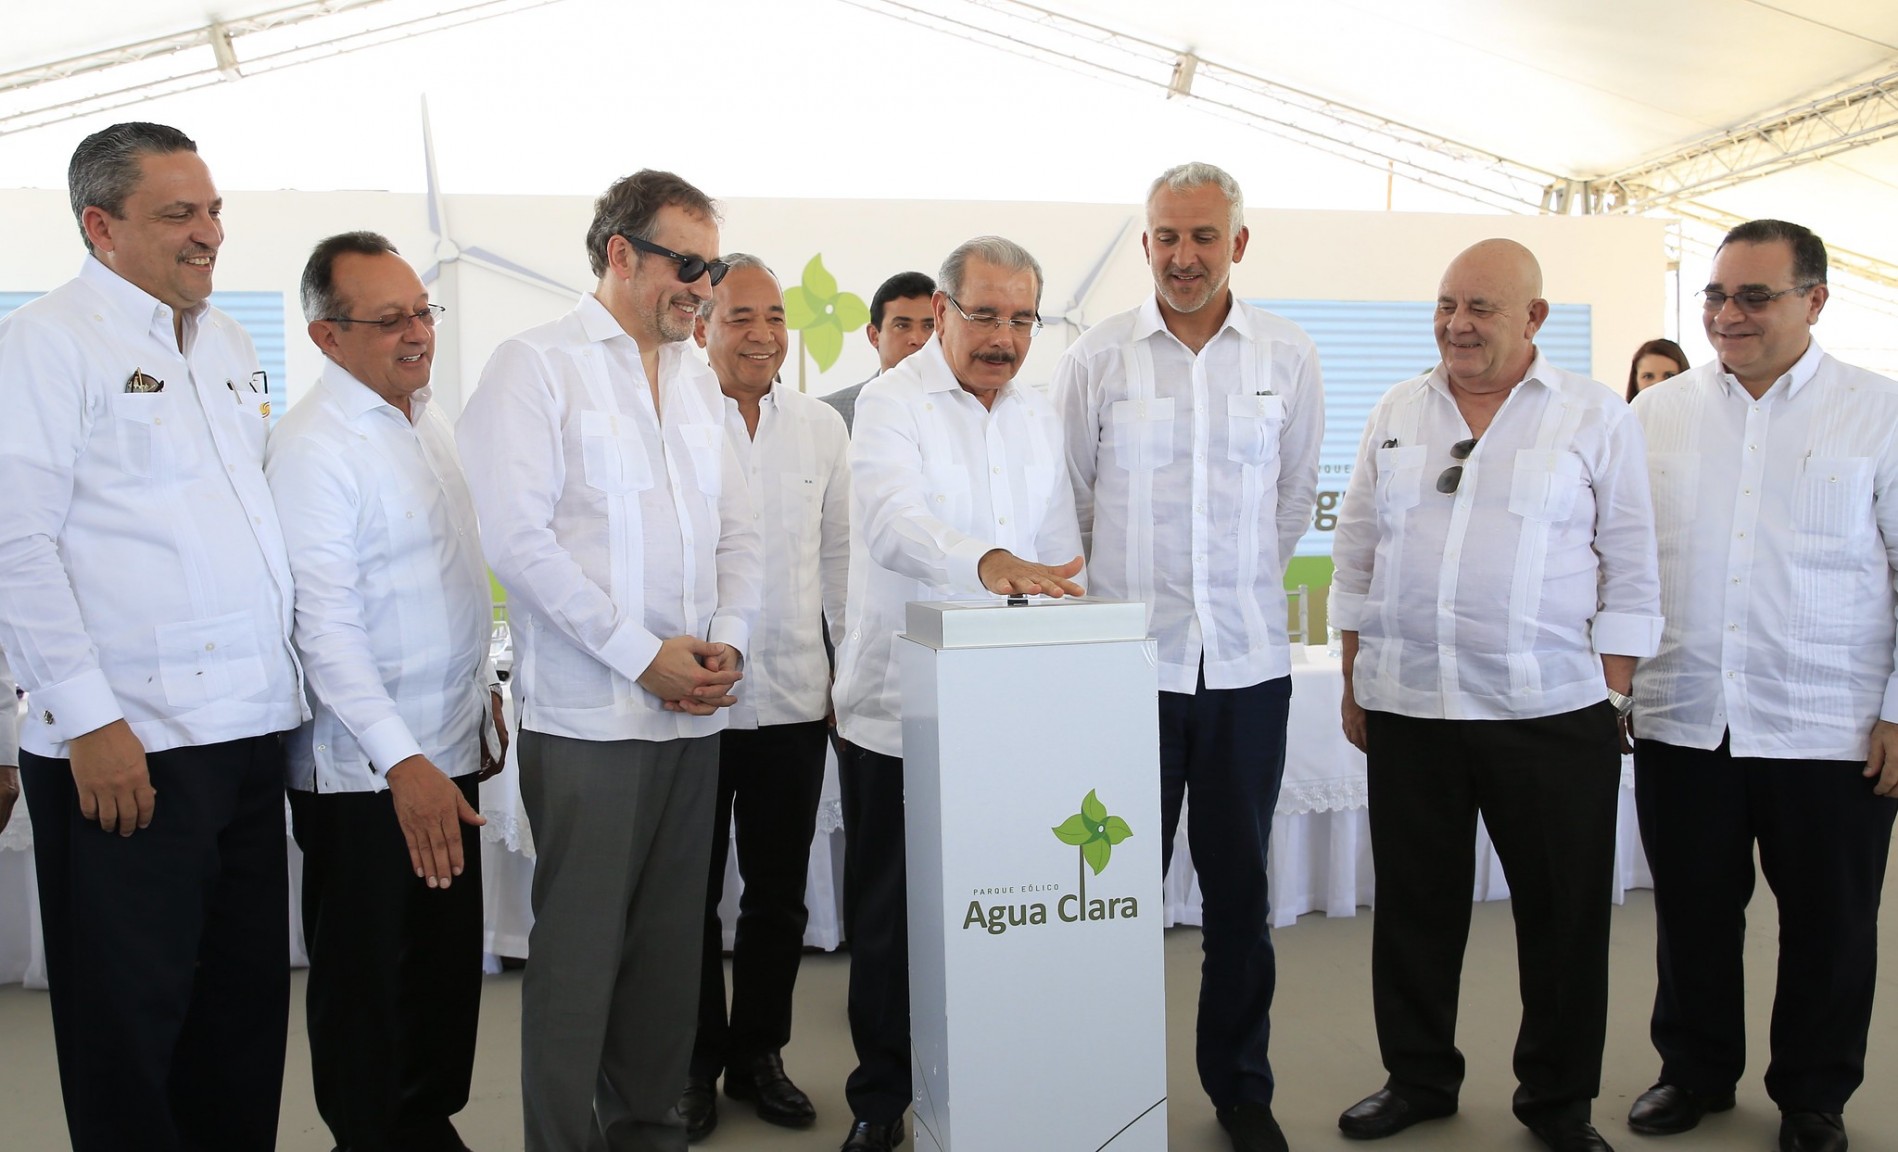 REPÚBLICA DOMINICANA: Más energía limpia: Danilo Medina asiste a inicio operaciones Parque Eólico Agua Clara, que aportará 50 MW al Sistema Eléctrico Nacional